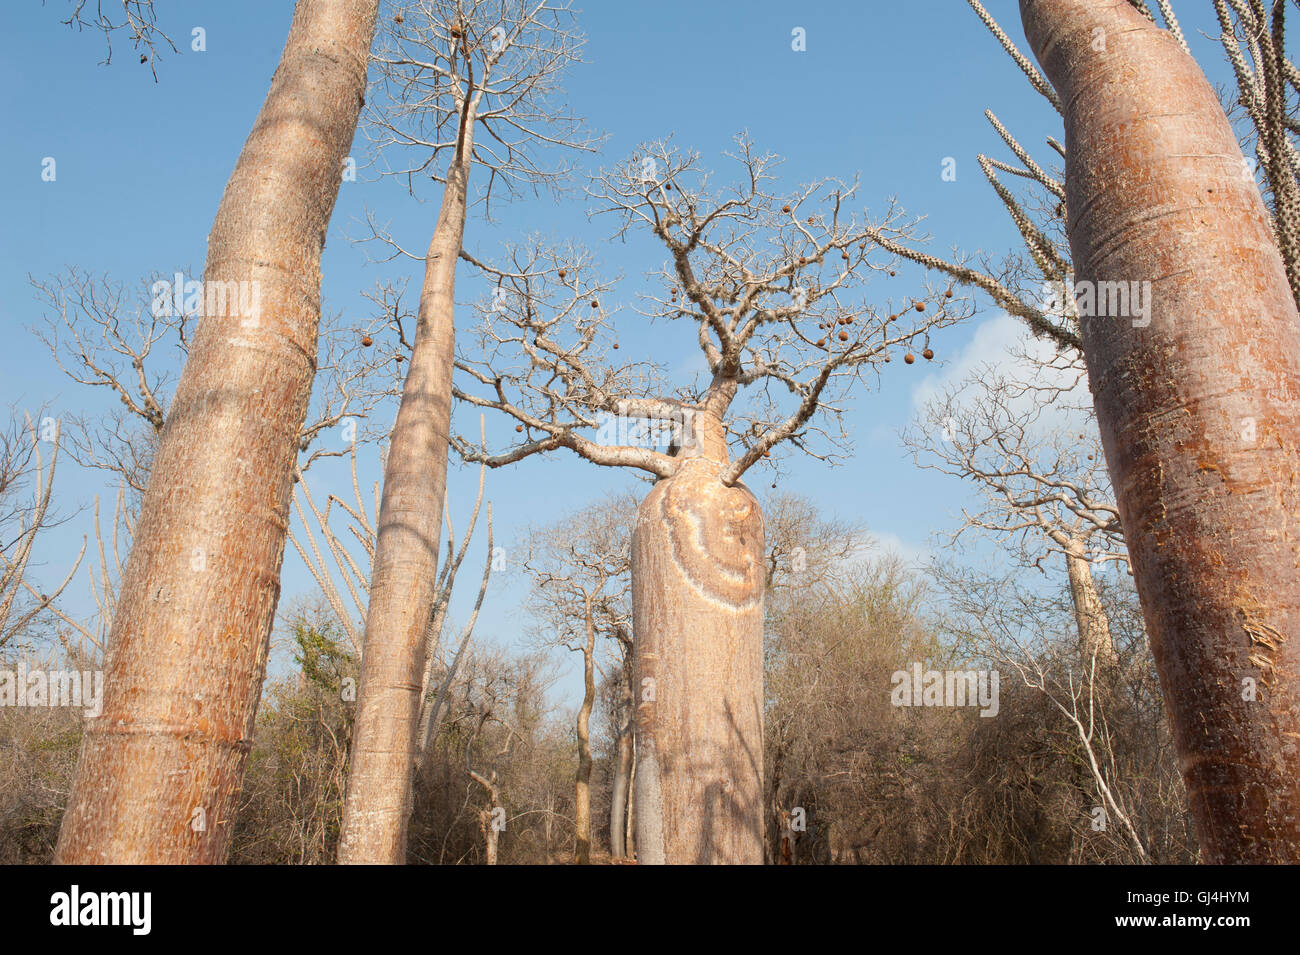 Fony Baobab Adansonia rubrostipa Madagascar Stock Photo